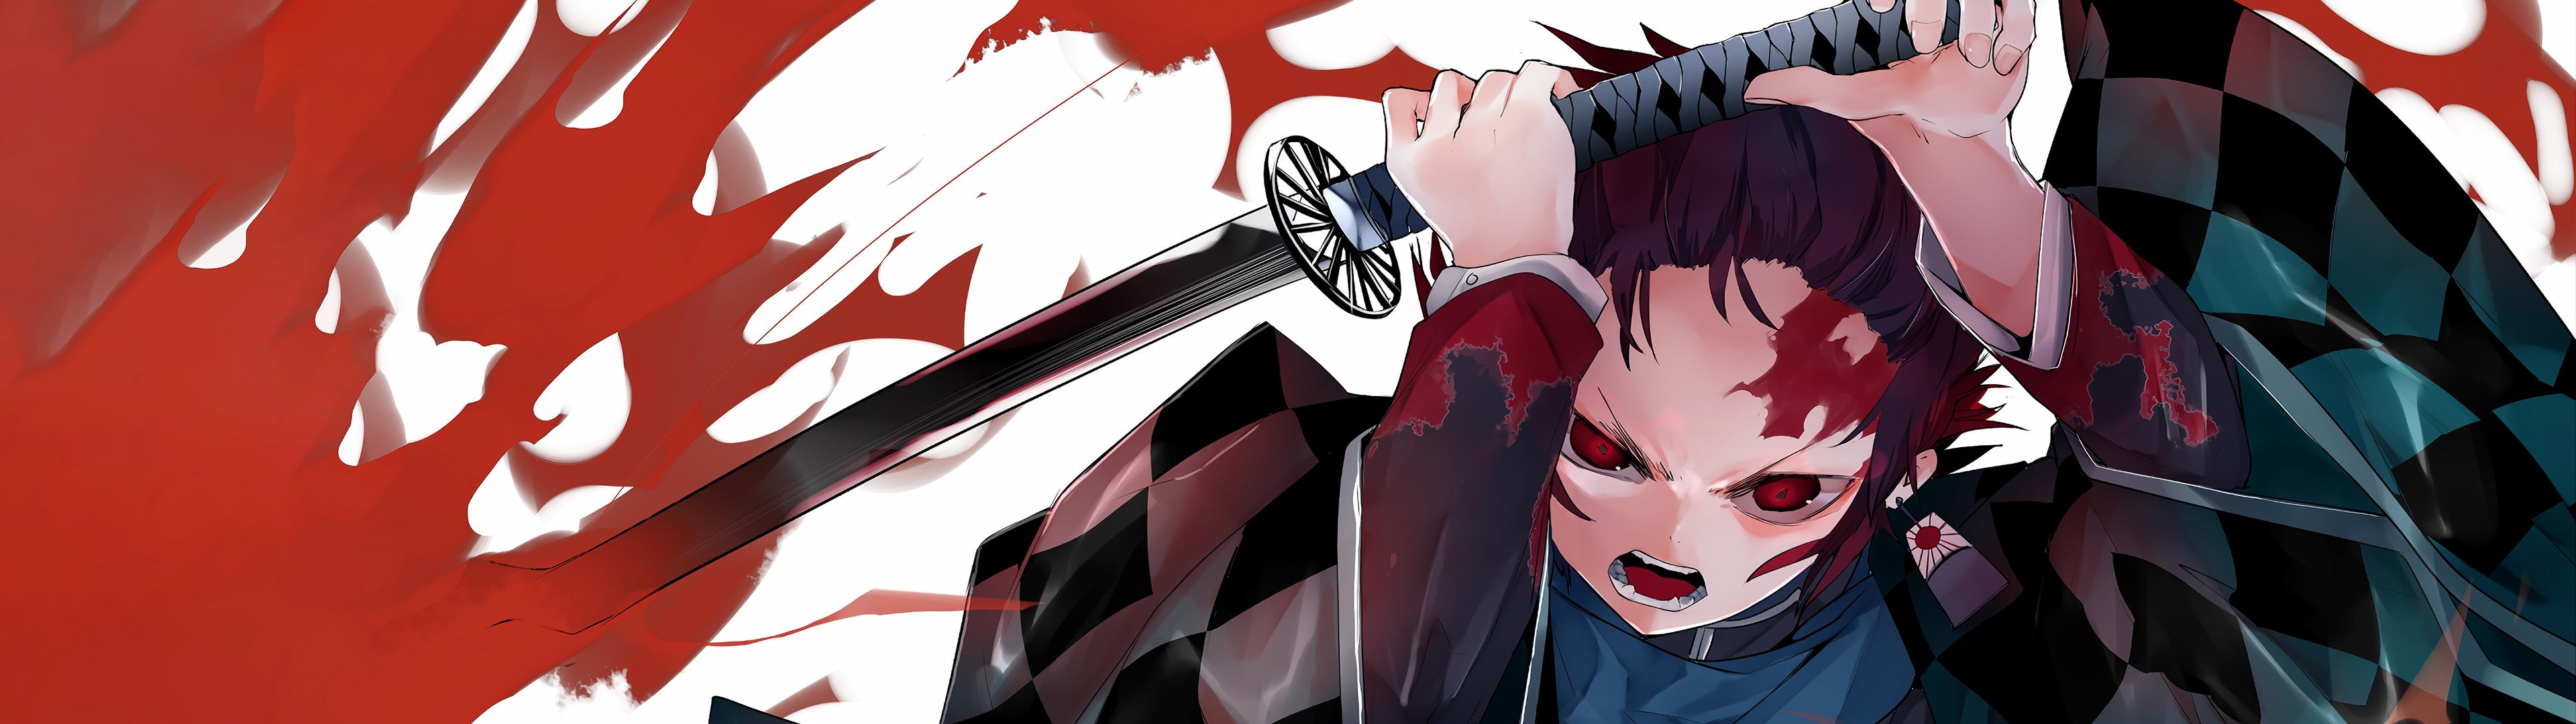 3840 x 1080 · png - Anime Wallpaper HD: Demon Slayer Wallpaper Mac